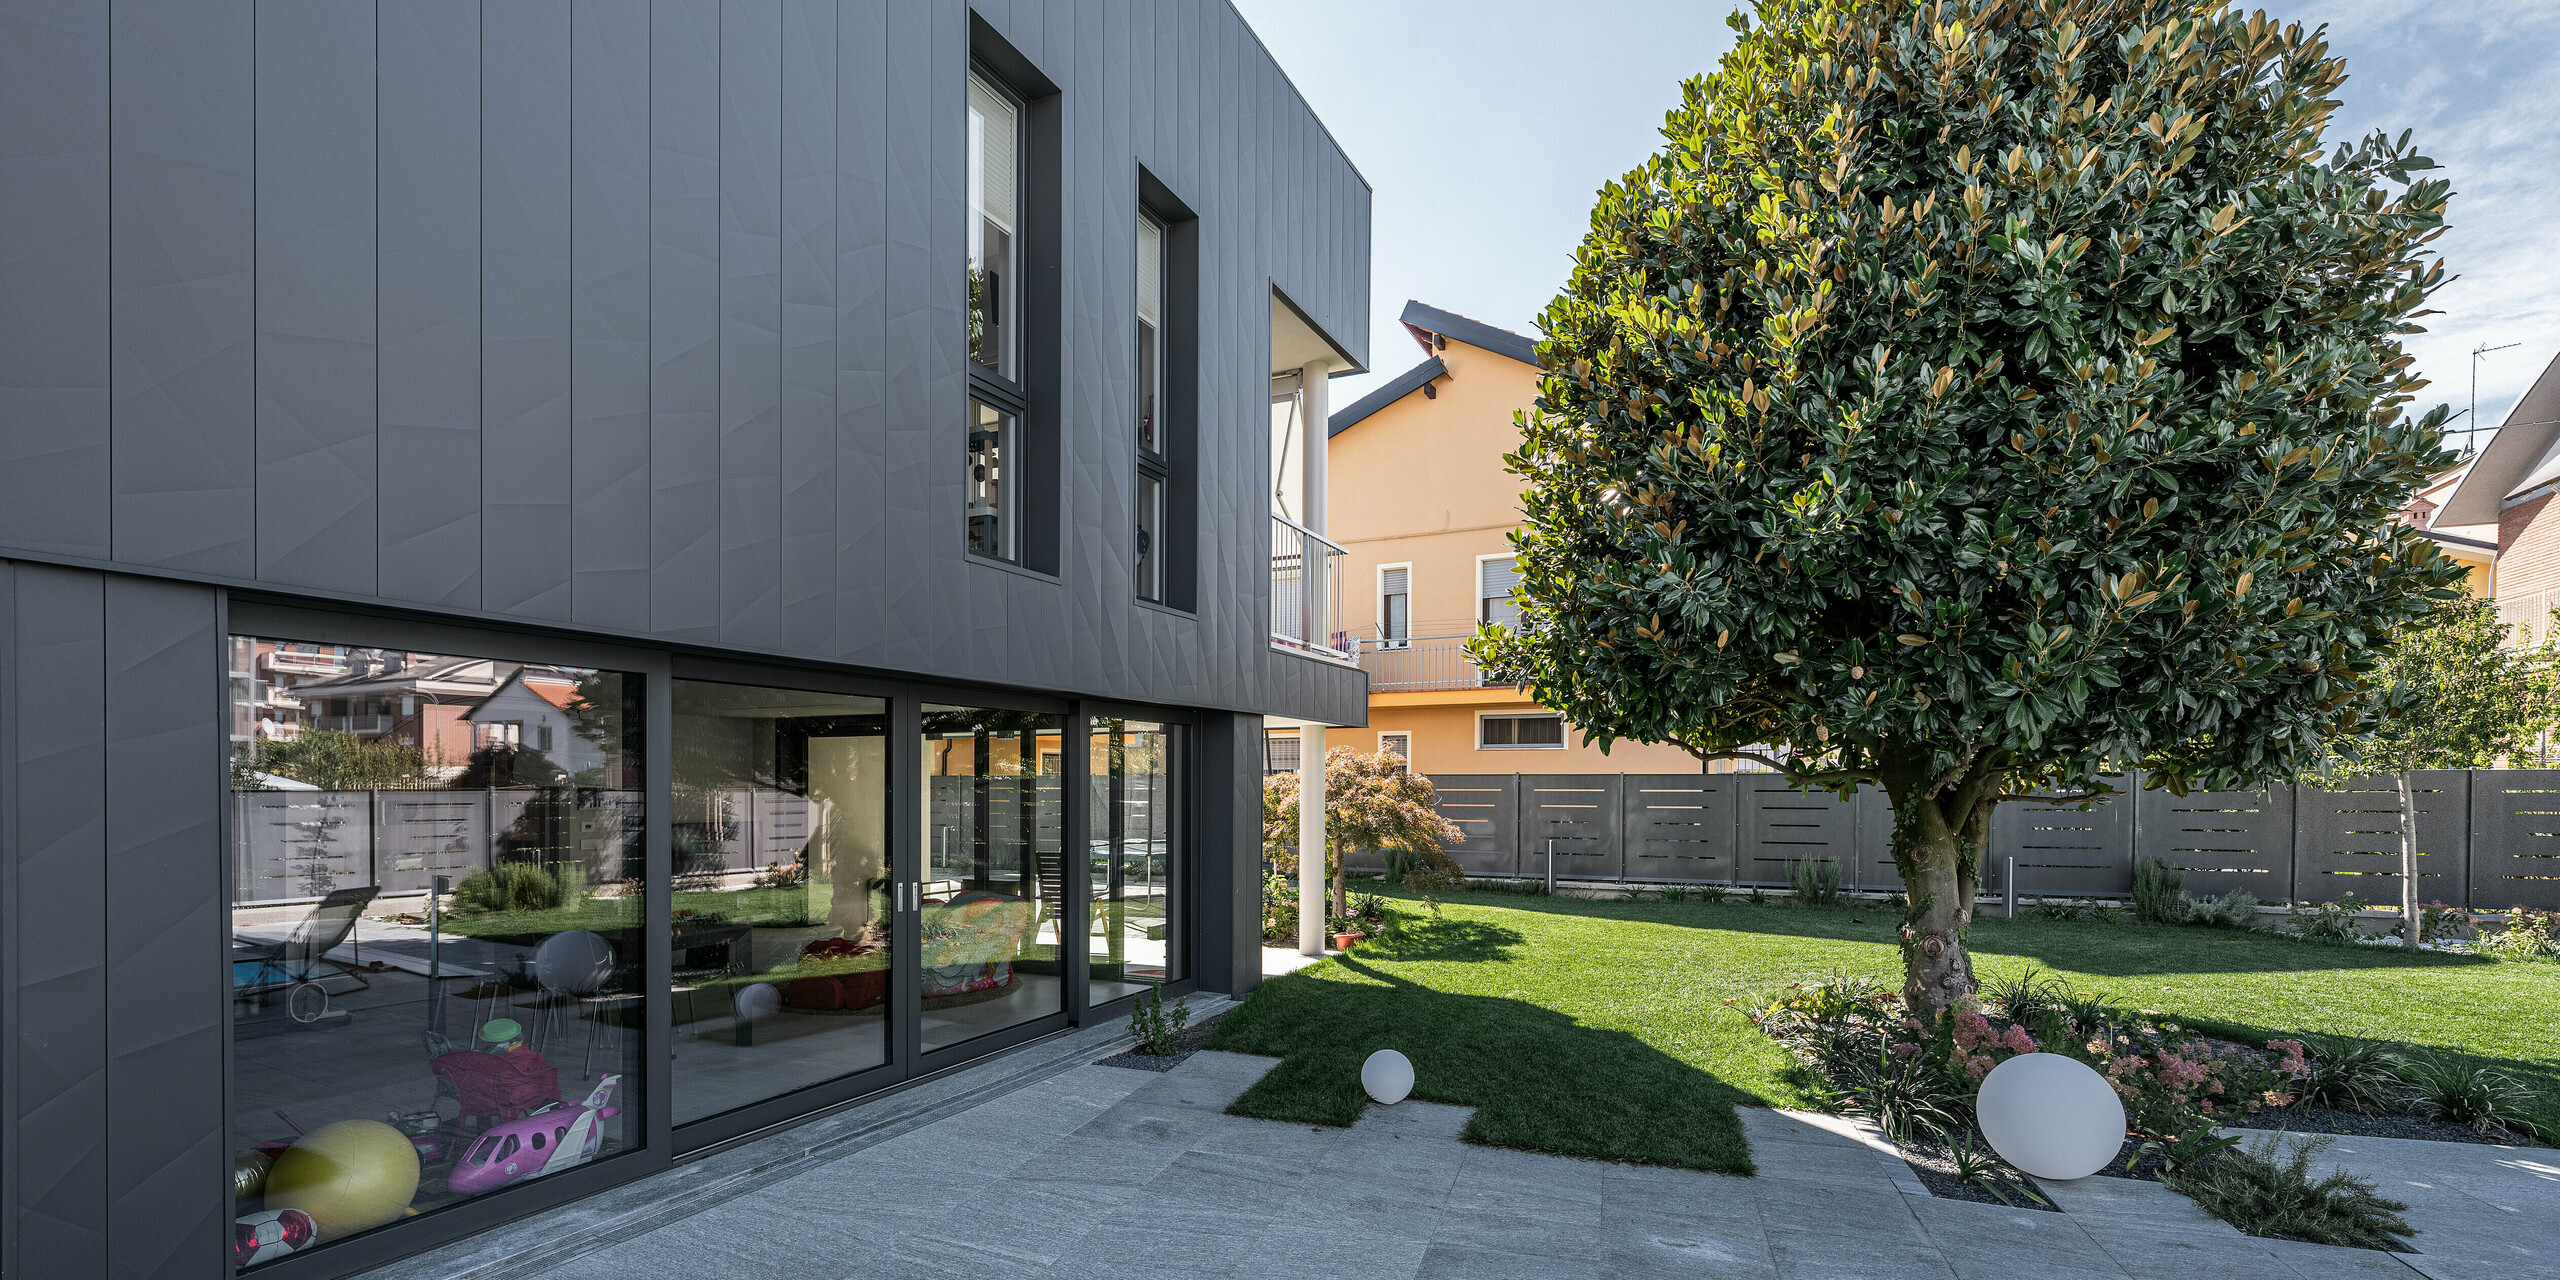 Detaillierte Seitenansicht eines modernen Einfamilienhauses in Savigliano, Italien, hervorgehoben durch eine stilvolle PREFA Siding.X Aluminiumfassade in P.10 Dunkelgrau. Die großzügigen Fenster und Glasfronten maximieren die natürliche Beleuchtung und verbinden das Innere nahtlos mit dem gepflegten Außenbereich. Diese Blechfassade repräsentiert eine Kombination aus Nachhaltigkeit und zeitgemäßem Design, wodurch das Gebäude sowohl ästhetisch ansprechend als auch funktional ist.